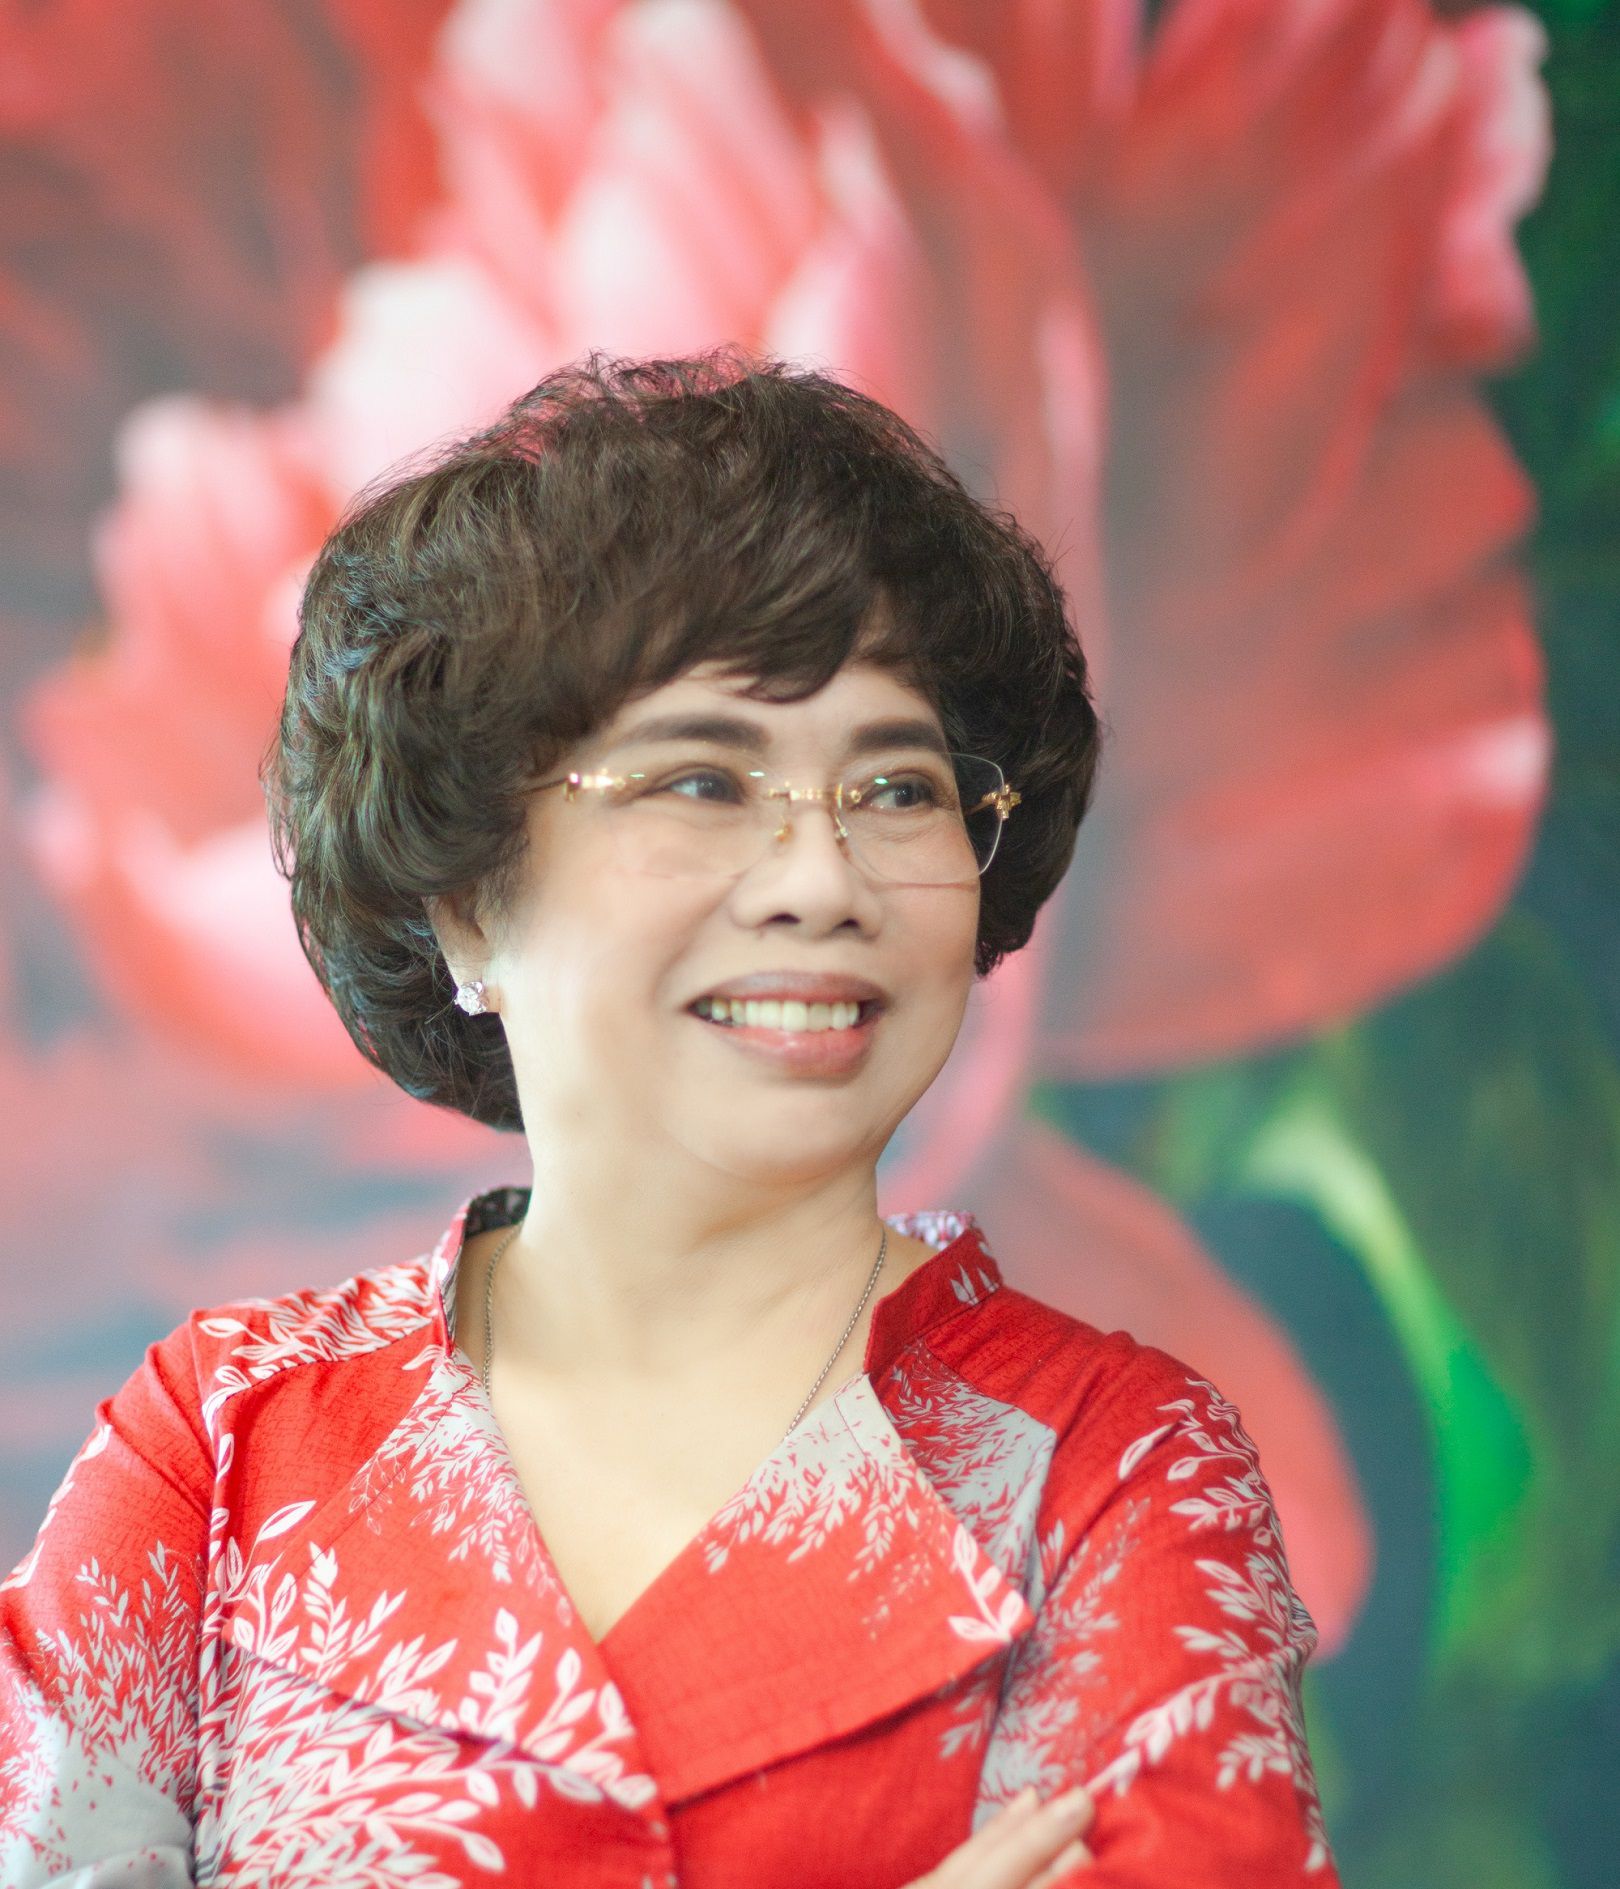 Anh hùng Lao động Thái Hương, Nhà Sáng lập Tập đoàn TH, Tổng Giám đốc Ngân hàng TMCP Bắc Á.